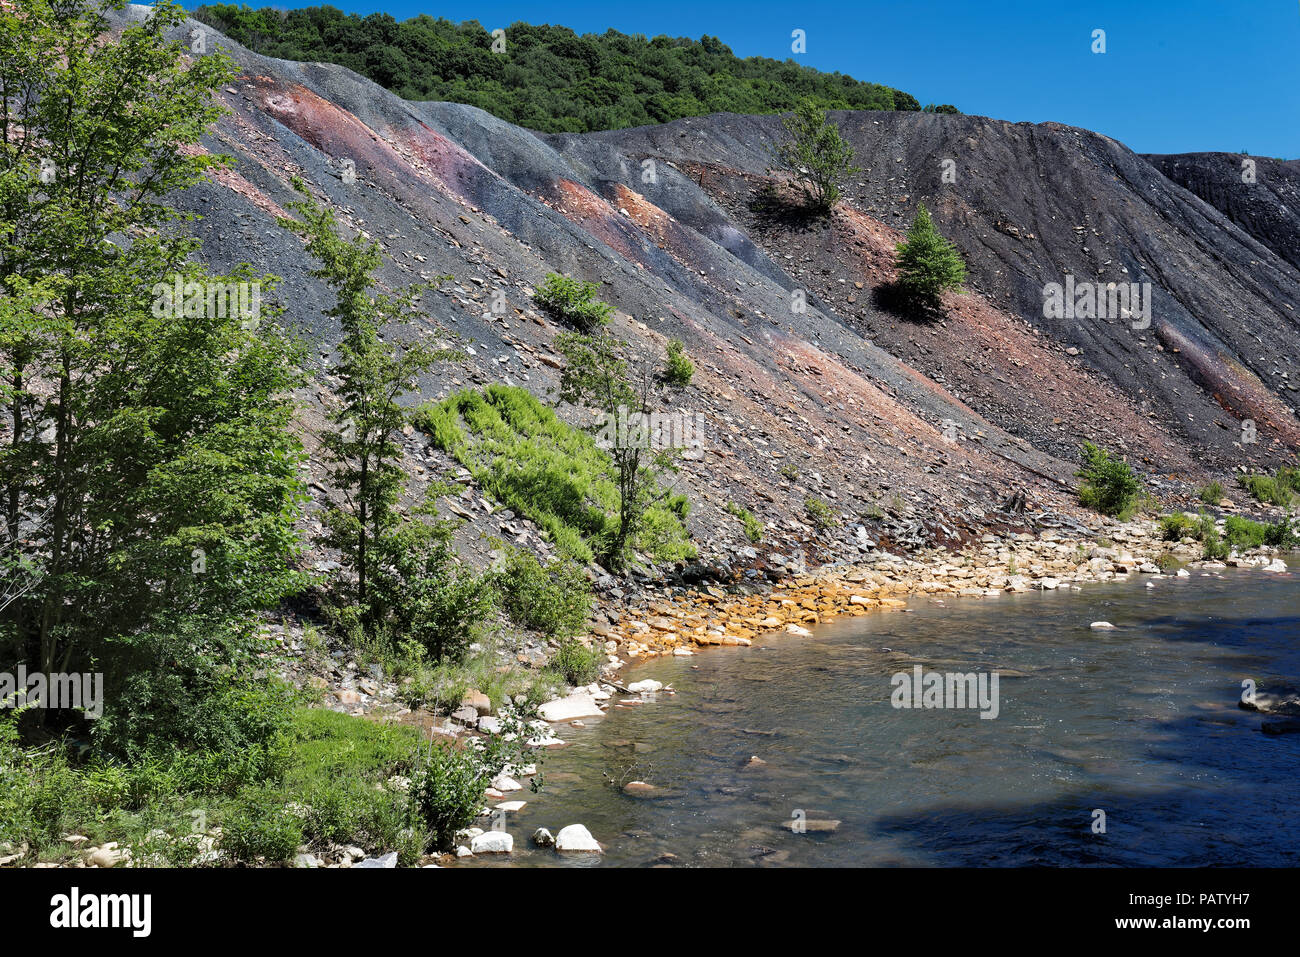 Residuos de los relaves de la mina de carbón la pila de escombros, al lado de un arroyo con piedras naranja mostrando los daños ambientales de contaminación tóxica y drenaje ácido de mina. Foto de stock